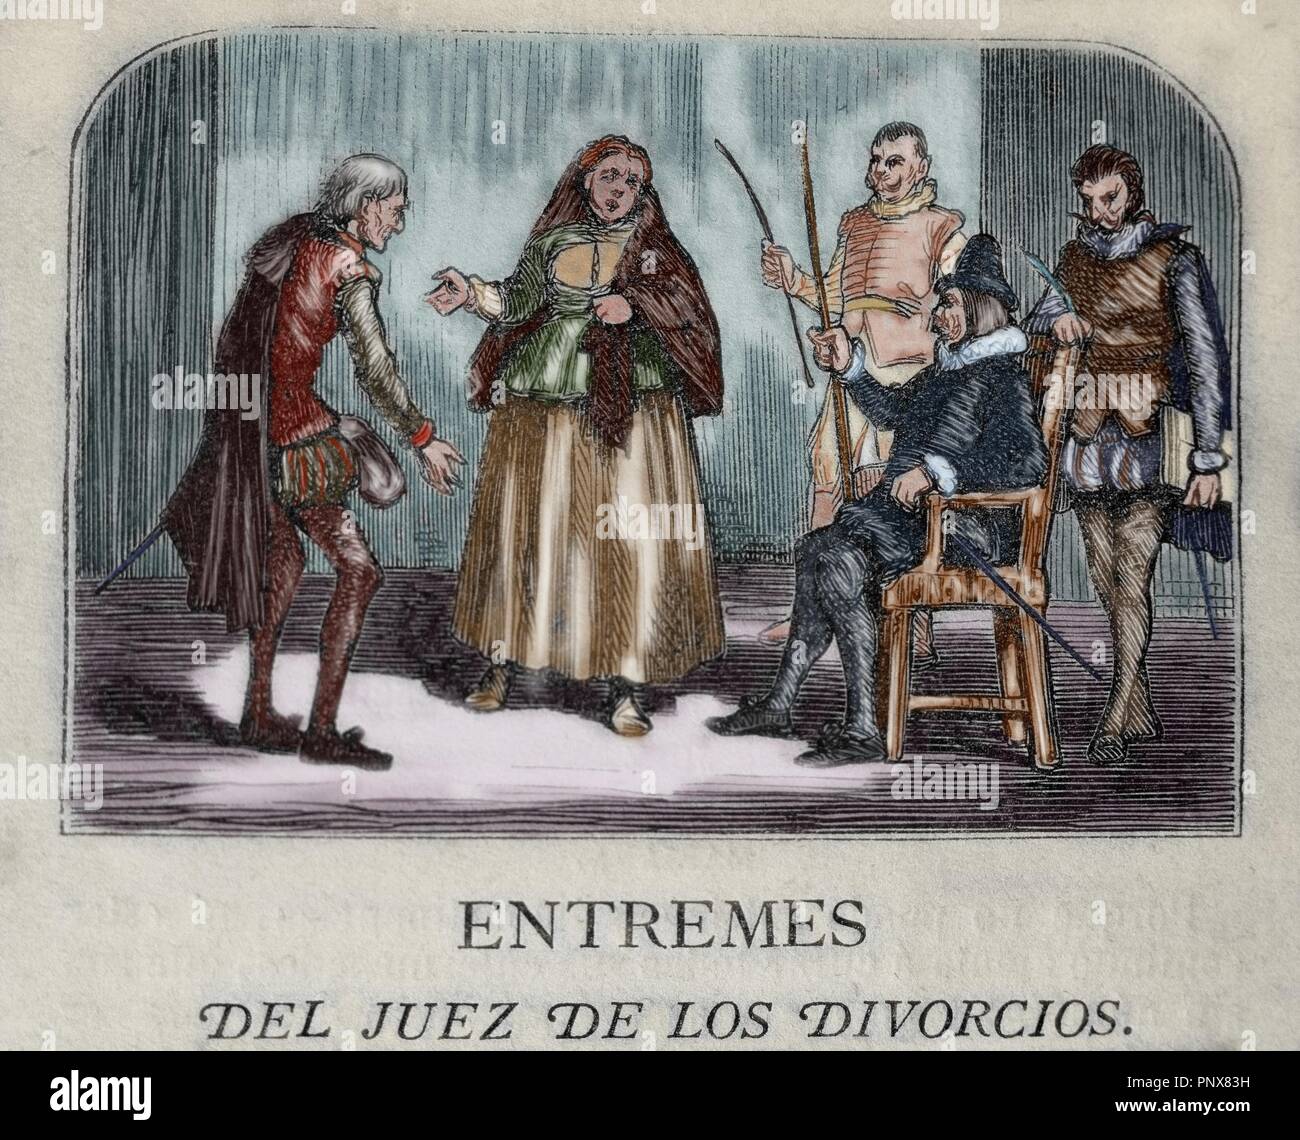 Miguel de Cervantes (1547-1616). Spanish writer. Short farce The Divorce judge (El Juez de los divorcios). Engraving. 1868. Private collection. Stock Photo